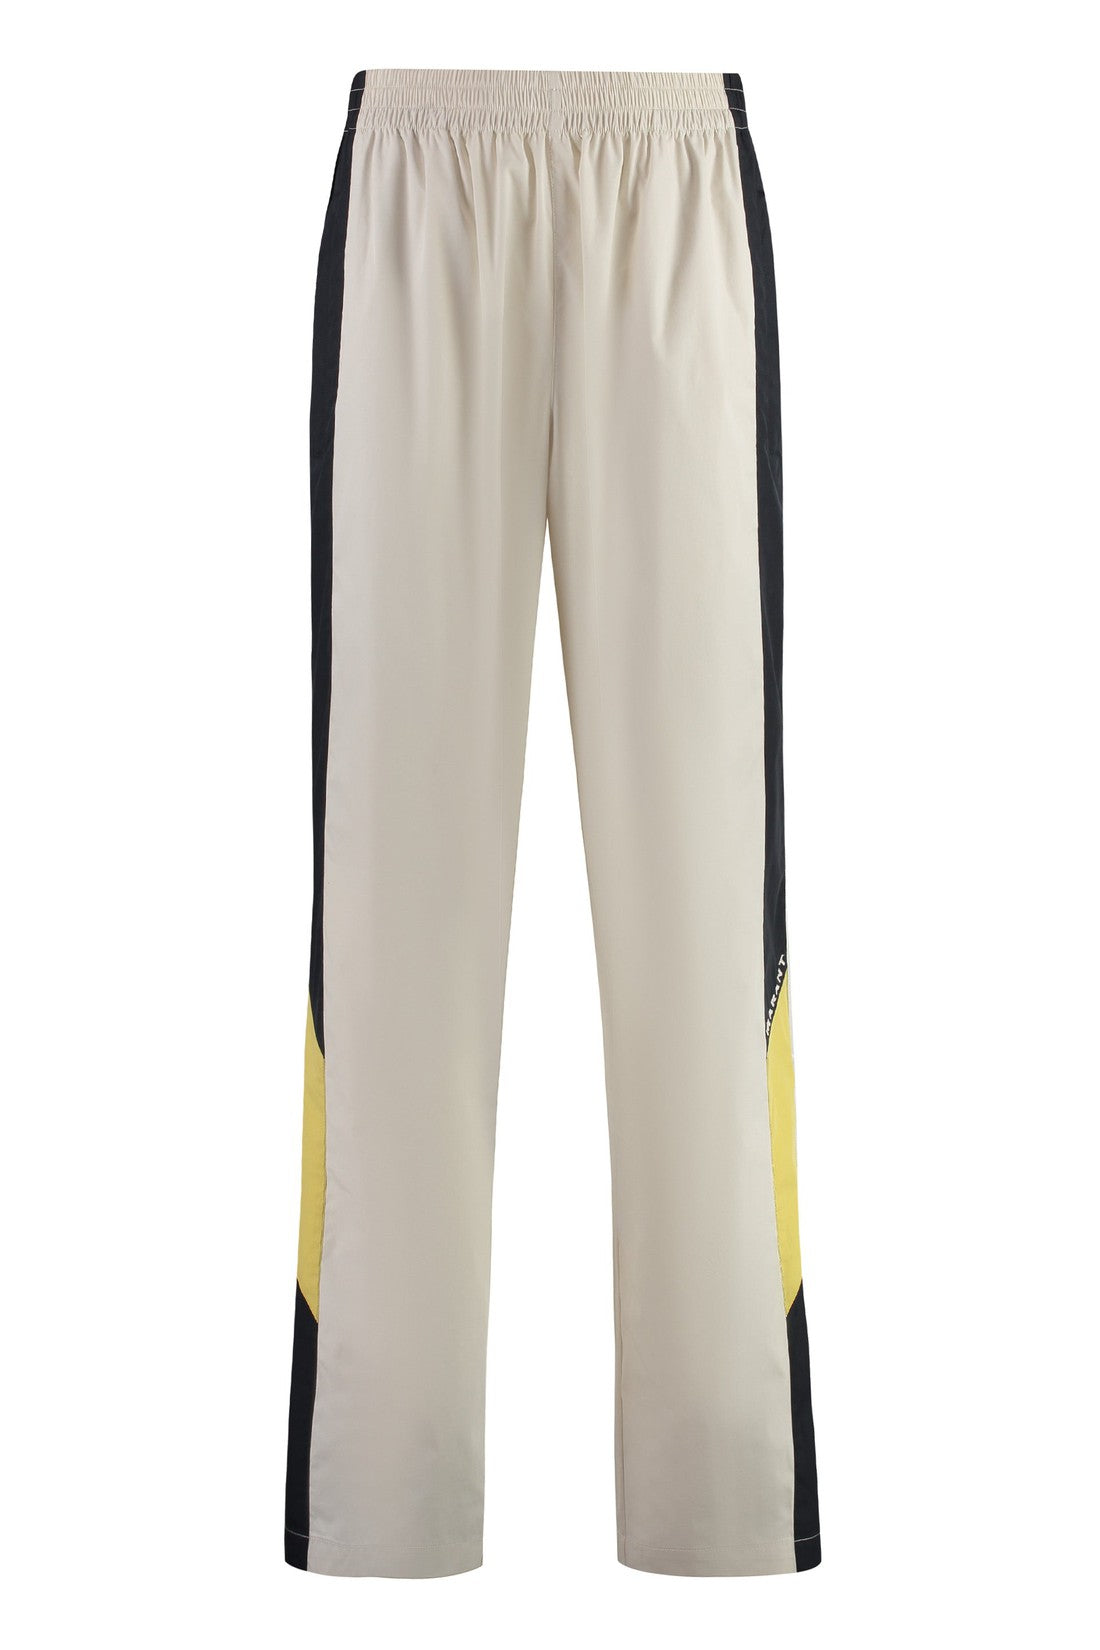 Marant-OUTLET-SALE-Cotton blend trousers-ARCHIVIST